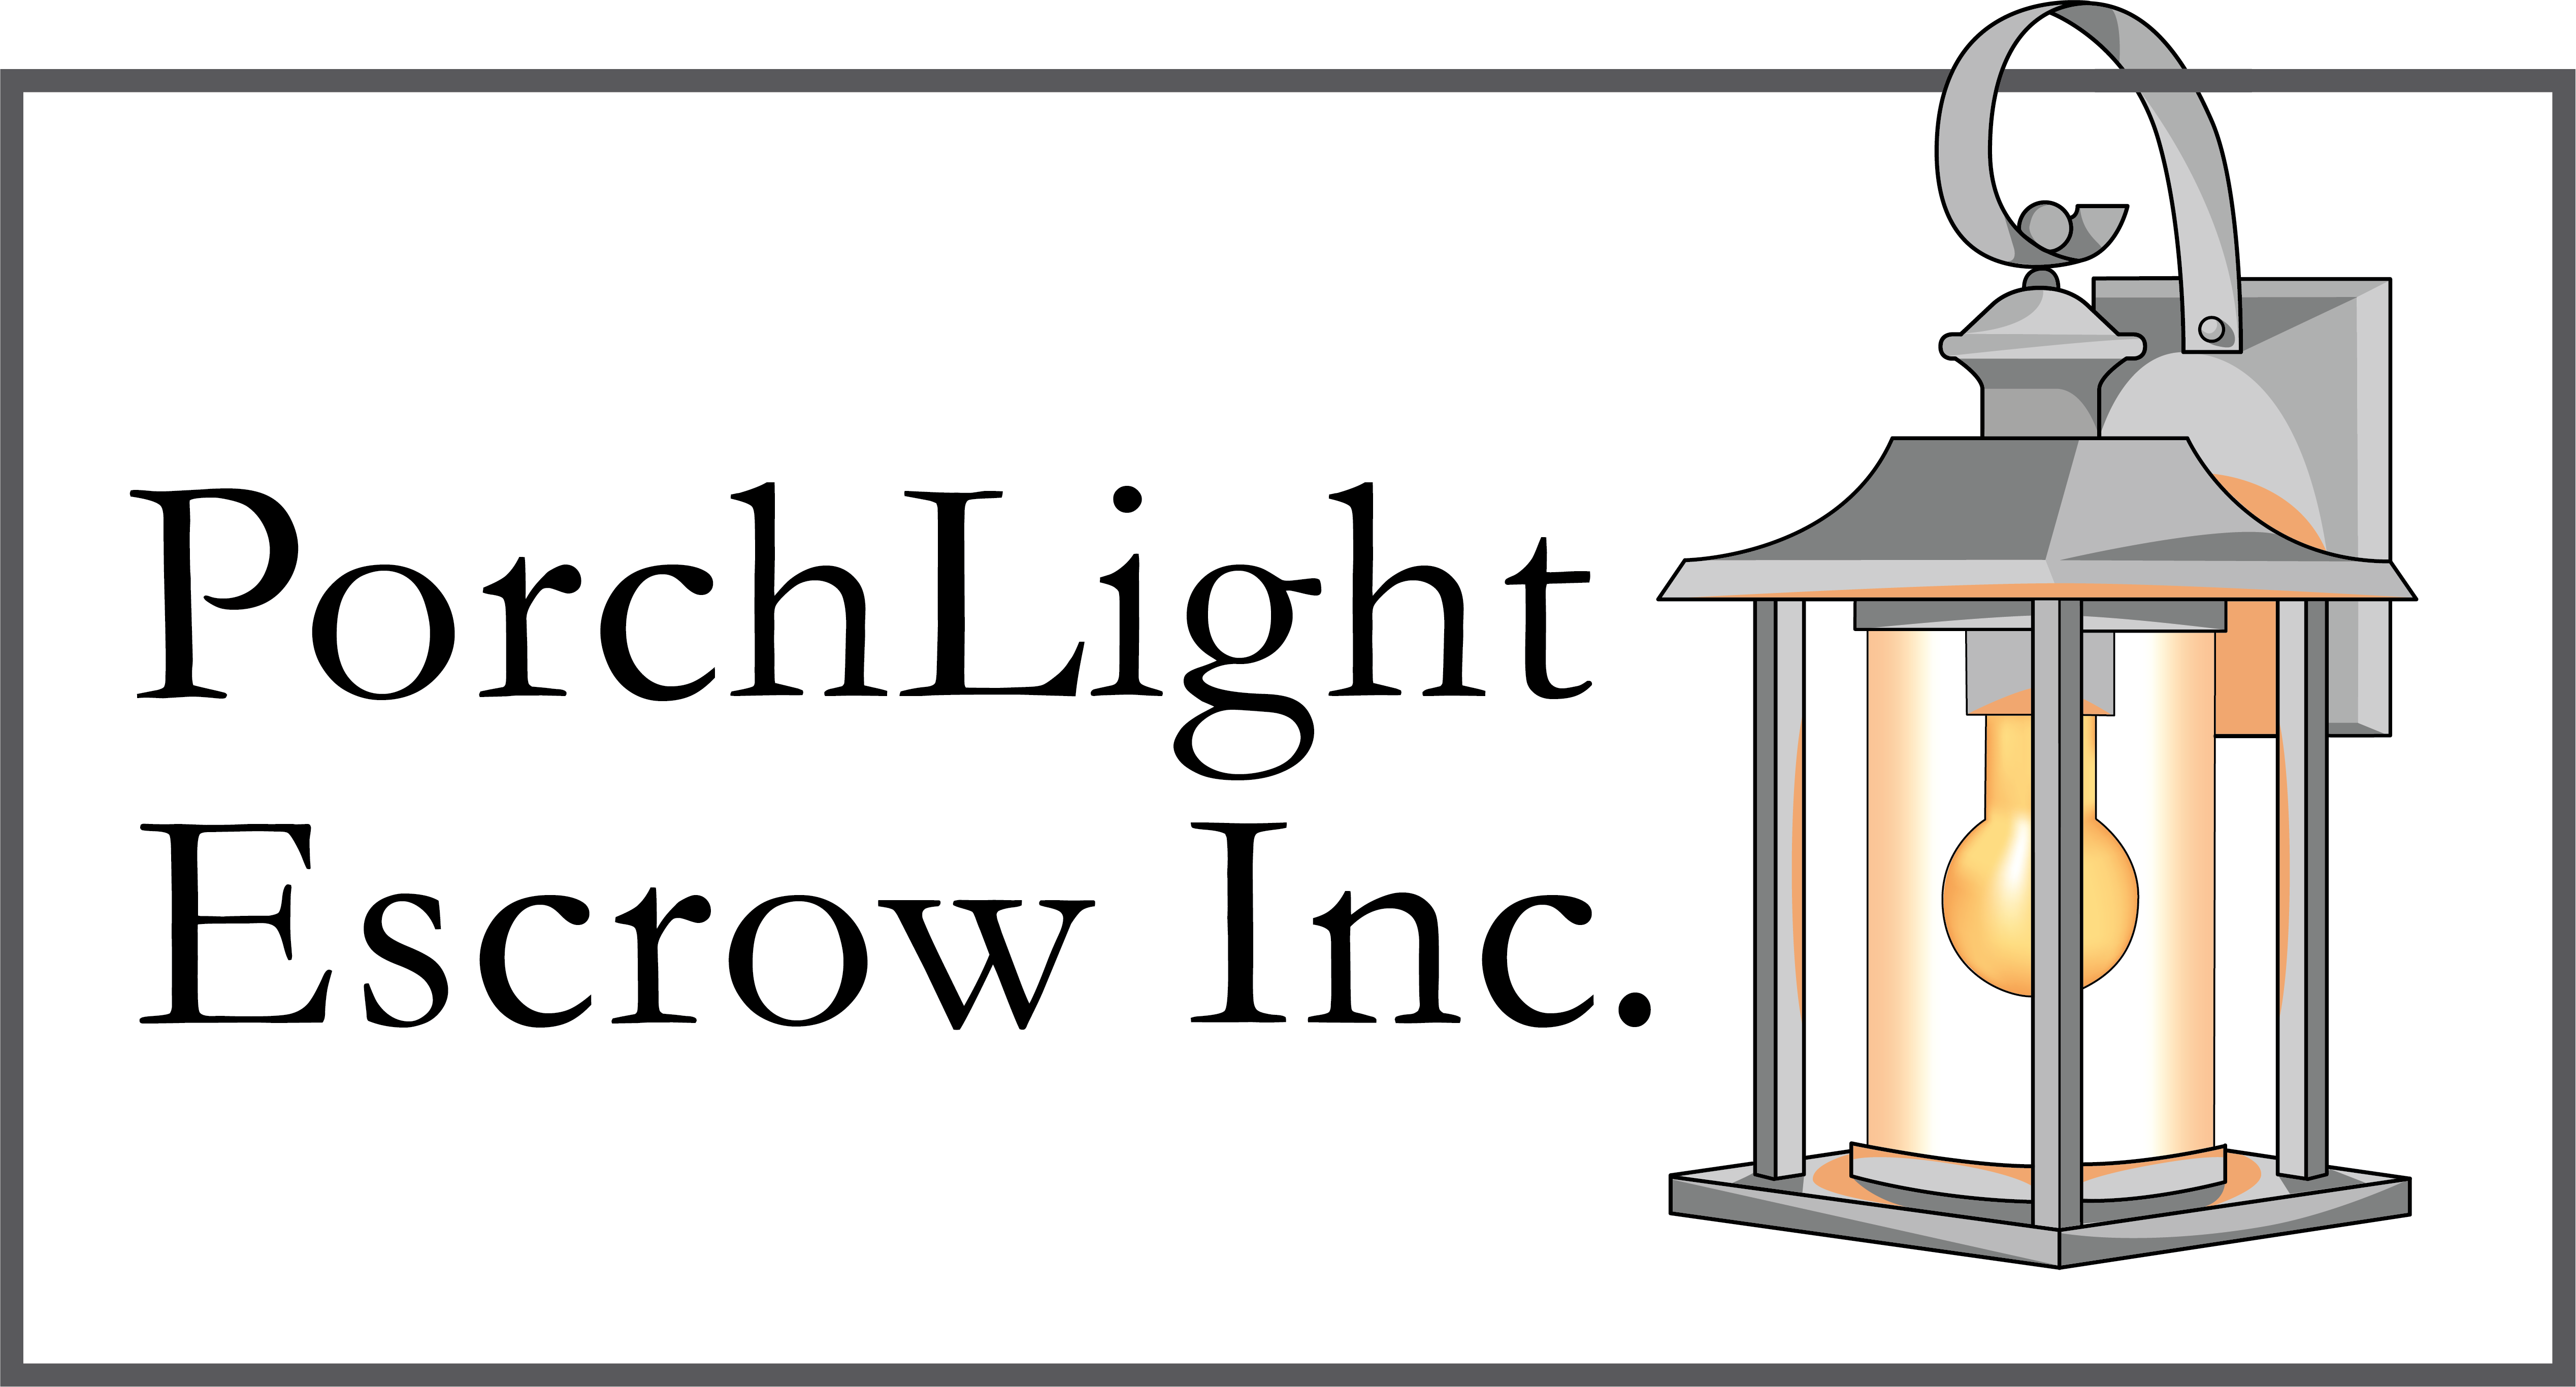 Porchlight Escrow Inc.